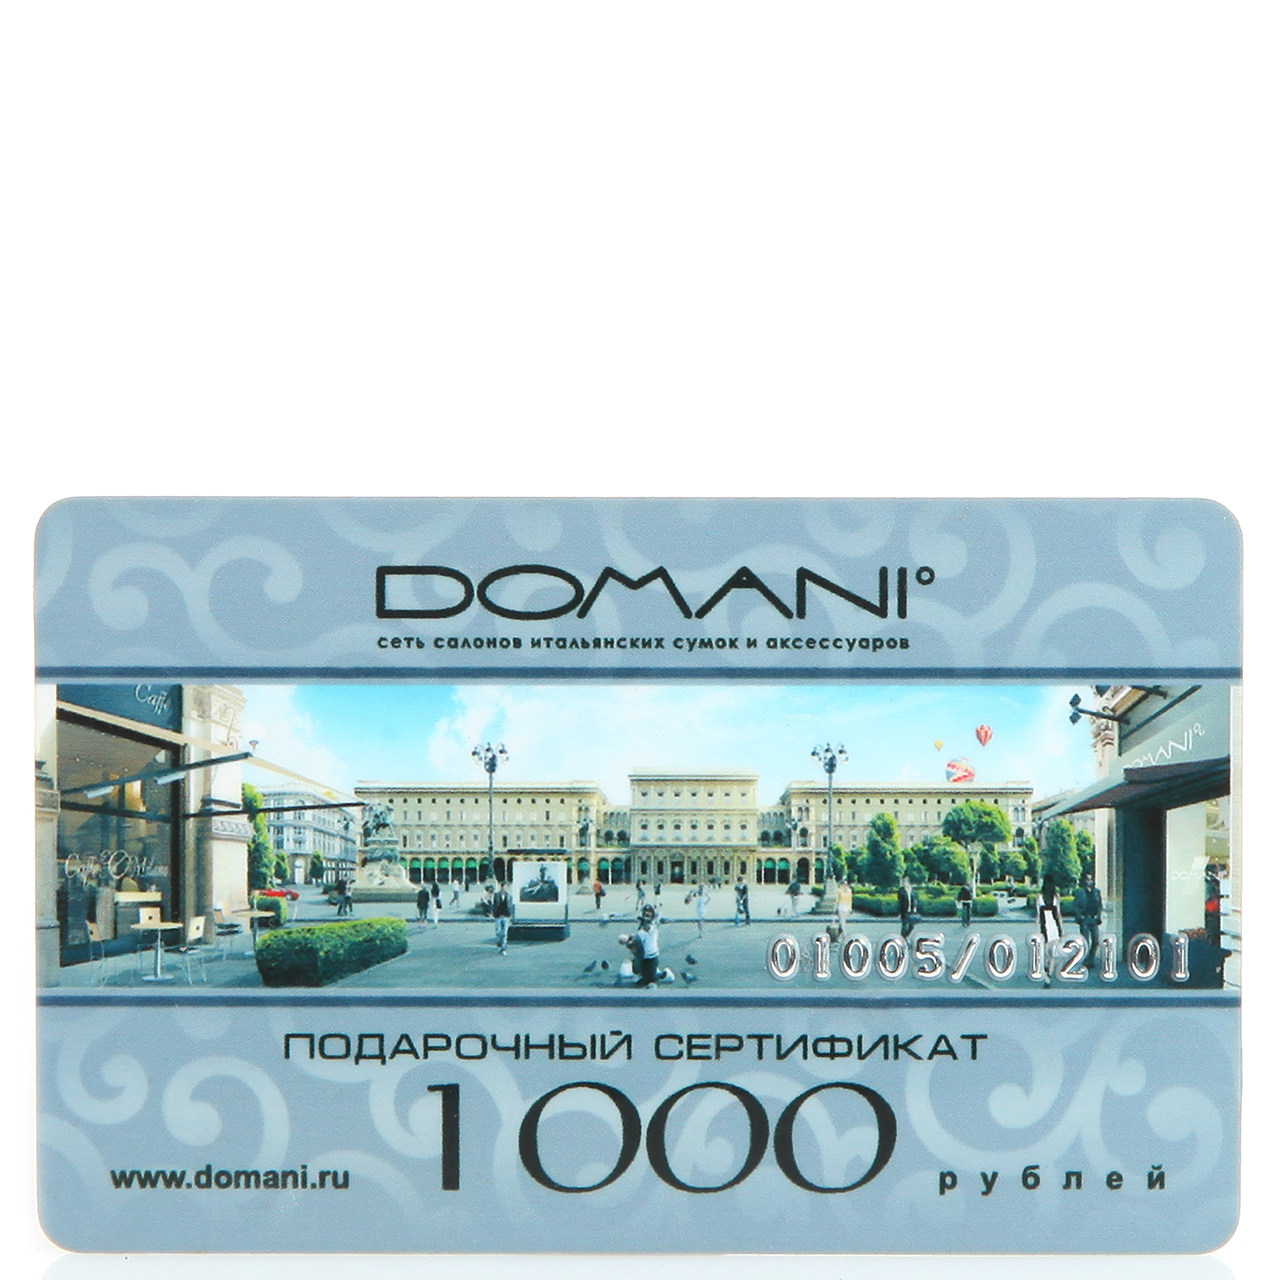 Подарочный сертификат Domani